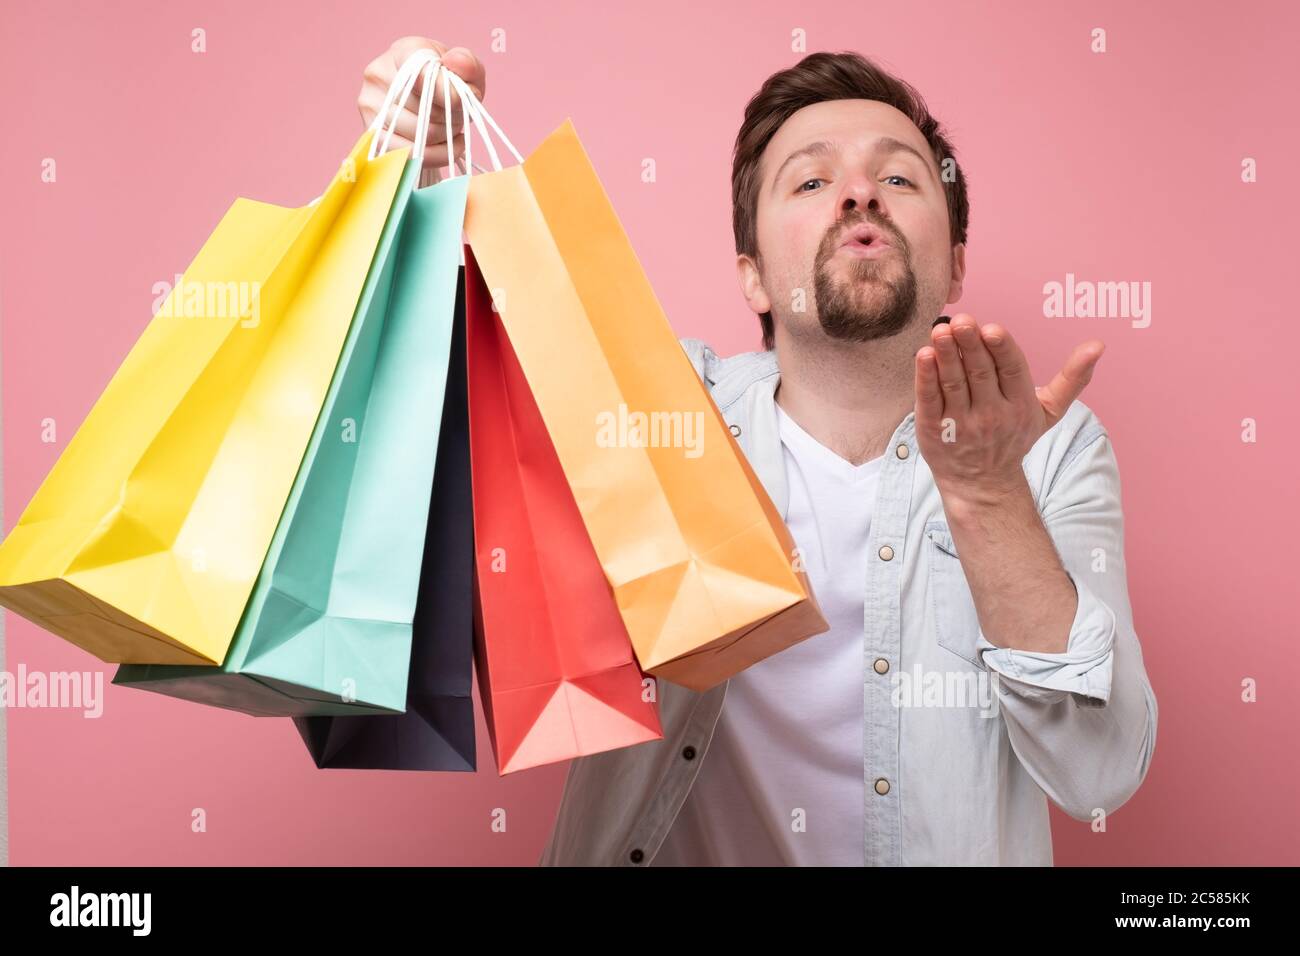 Junger Kaukasianer hält Einkaufstasche und sendet Luftkuss. Stockfoto